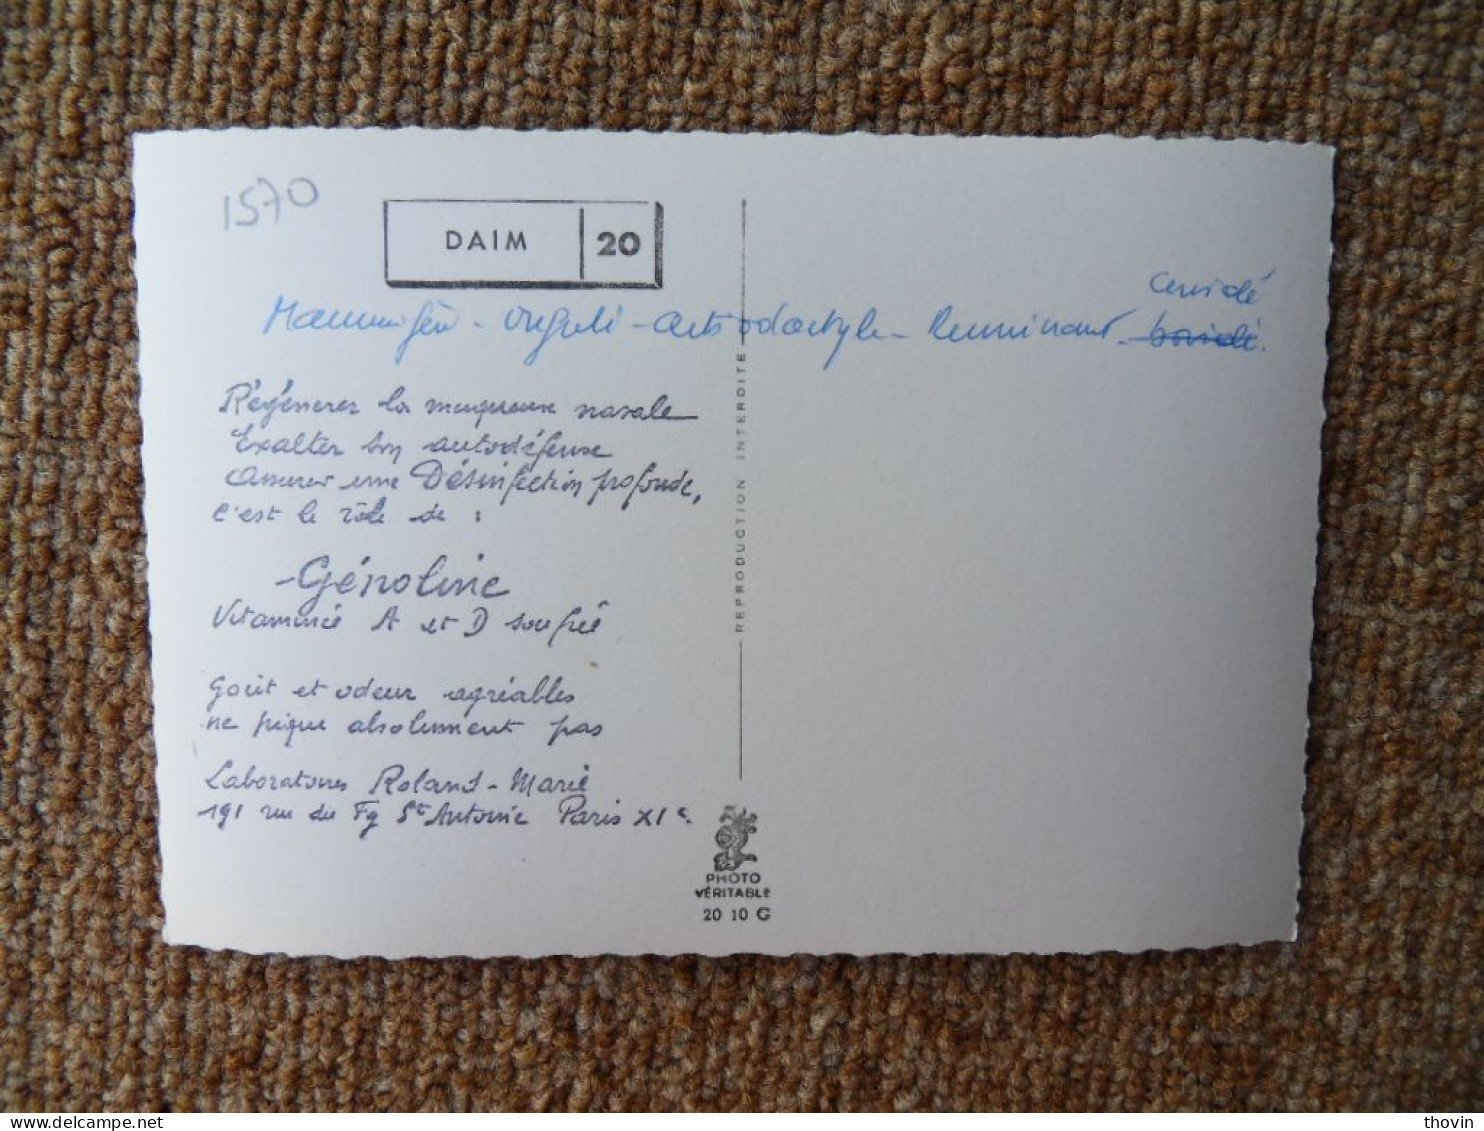 KB10/1559*1576-lot de 18 cartes postales animaux Publicité Laboratoires Roland Marie